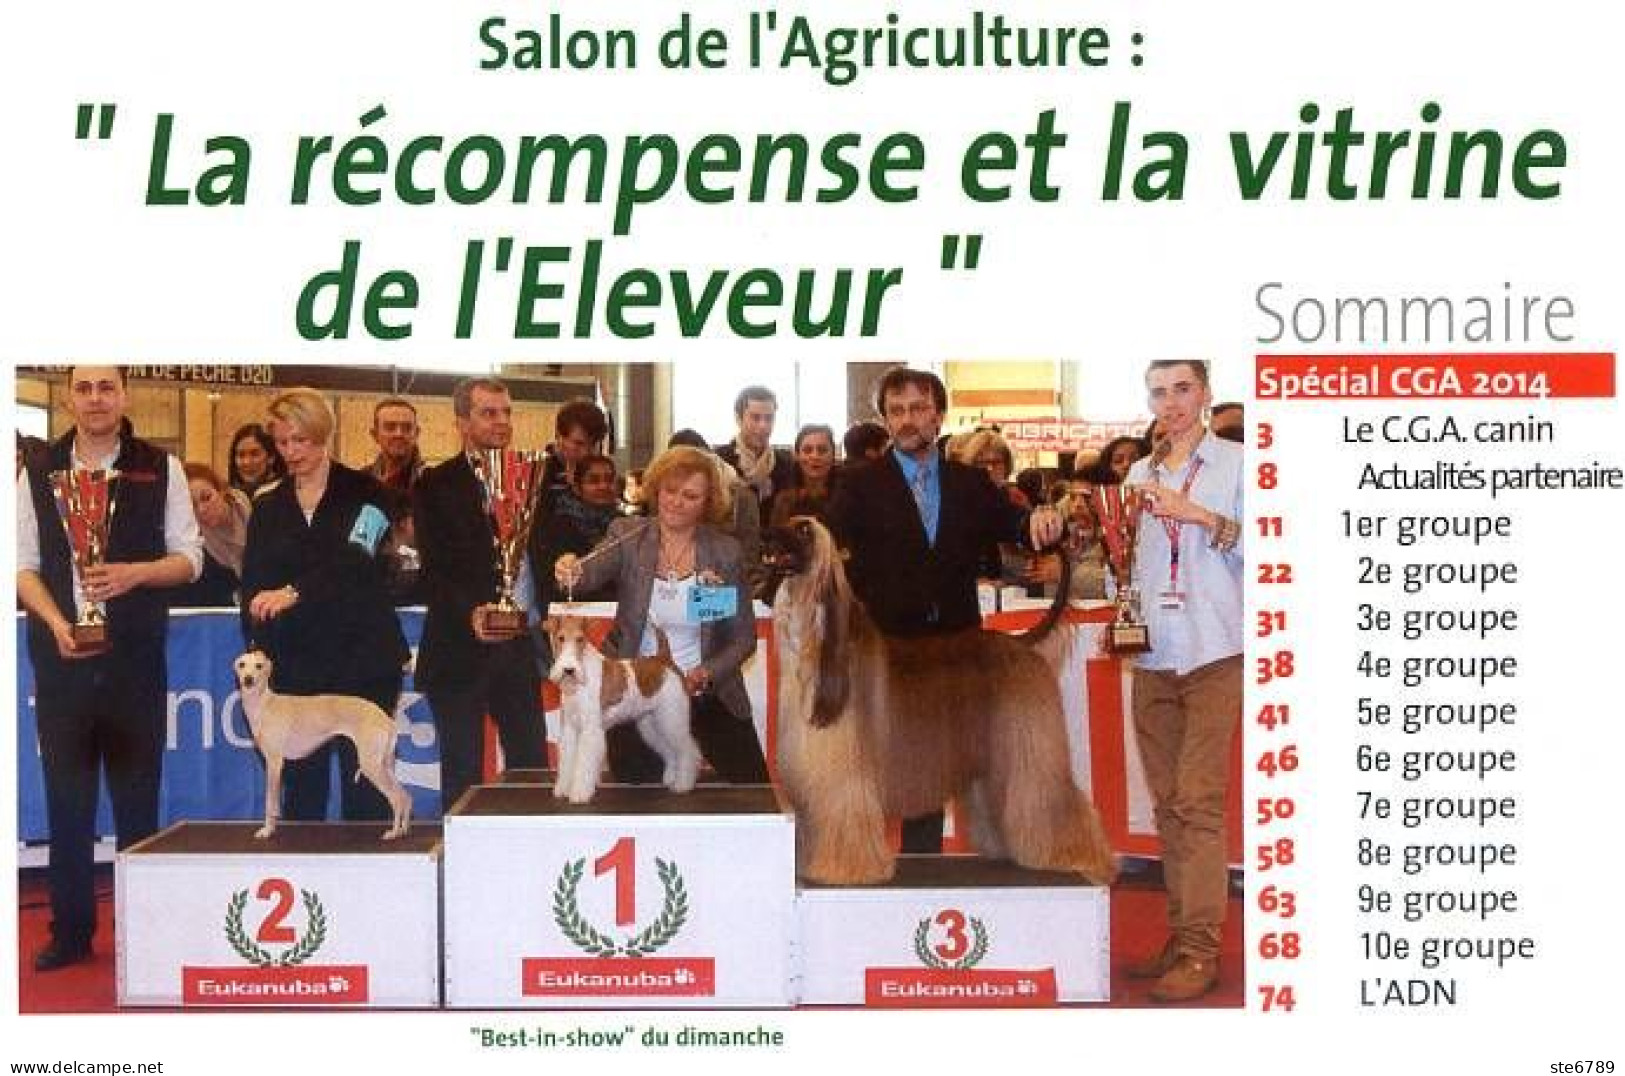 Cynophilie Francaise N° 169 Numéro Spécial CGA Concours Général Agricole Résultats Photos  , Revue Chien - Tierwelt